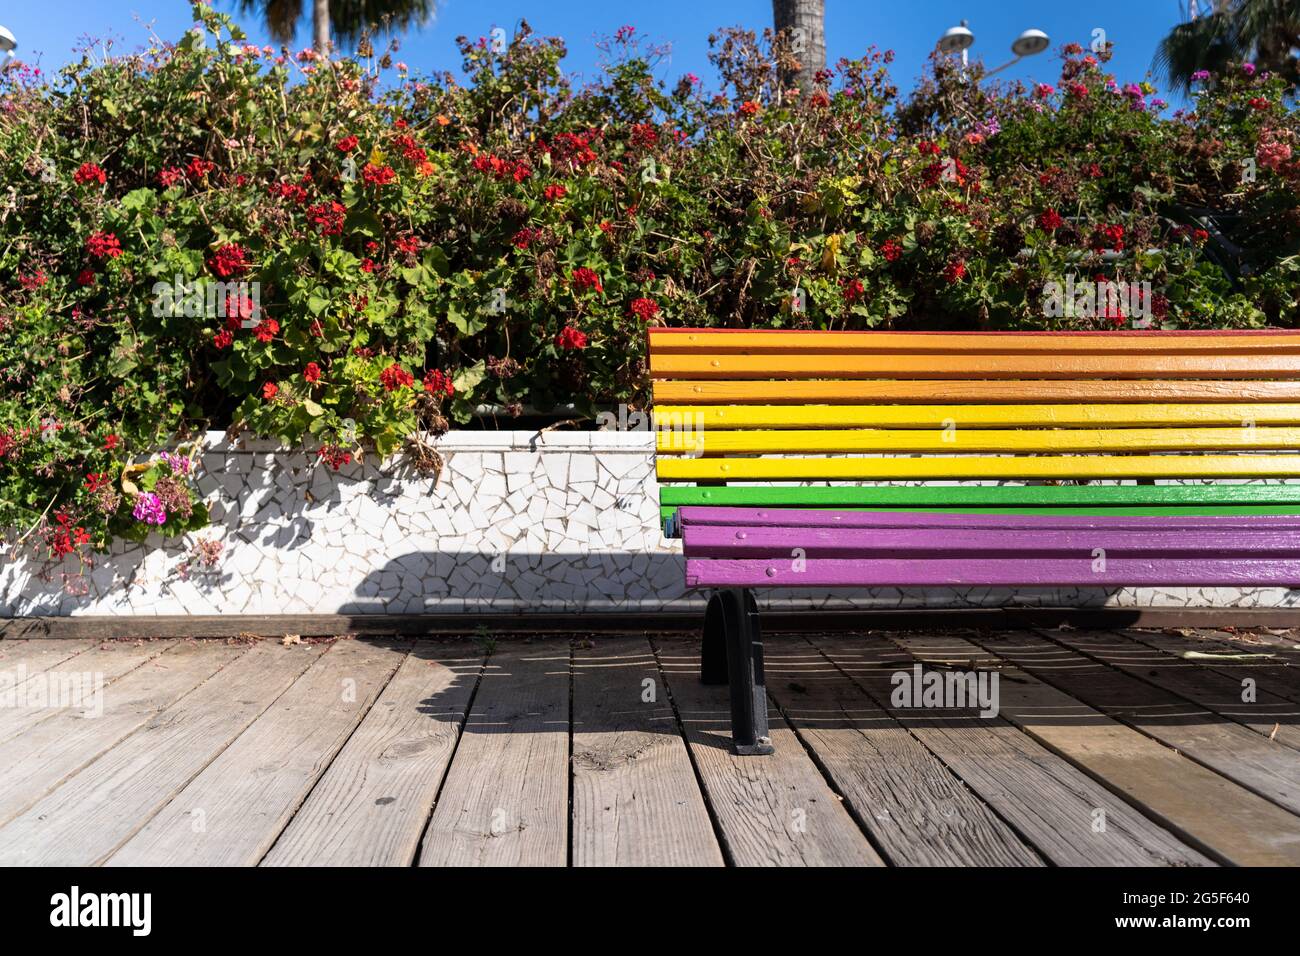 Image d'un banc de couleur demi-arc-en-ciel avec fond floral dans la ville de Valence, Espagne. Concept du jour de la fierté Banque D'Images